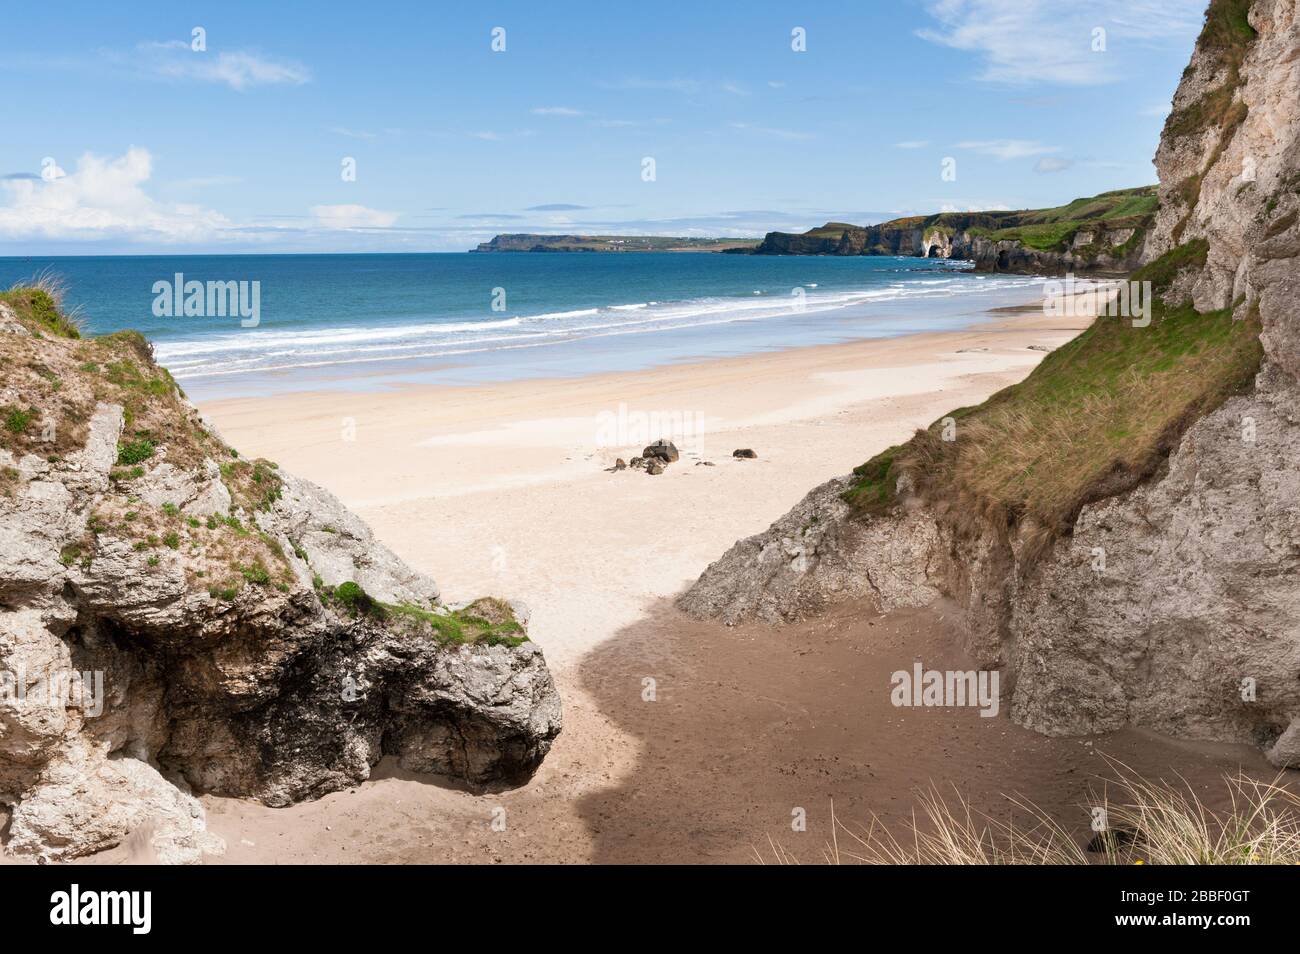 Falaises de calcaire à la plage de Whiterocks près de Portrush, sur la côte nord d'Antrim Causeway, en Irlande du Nord Banque D'Images